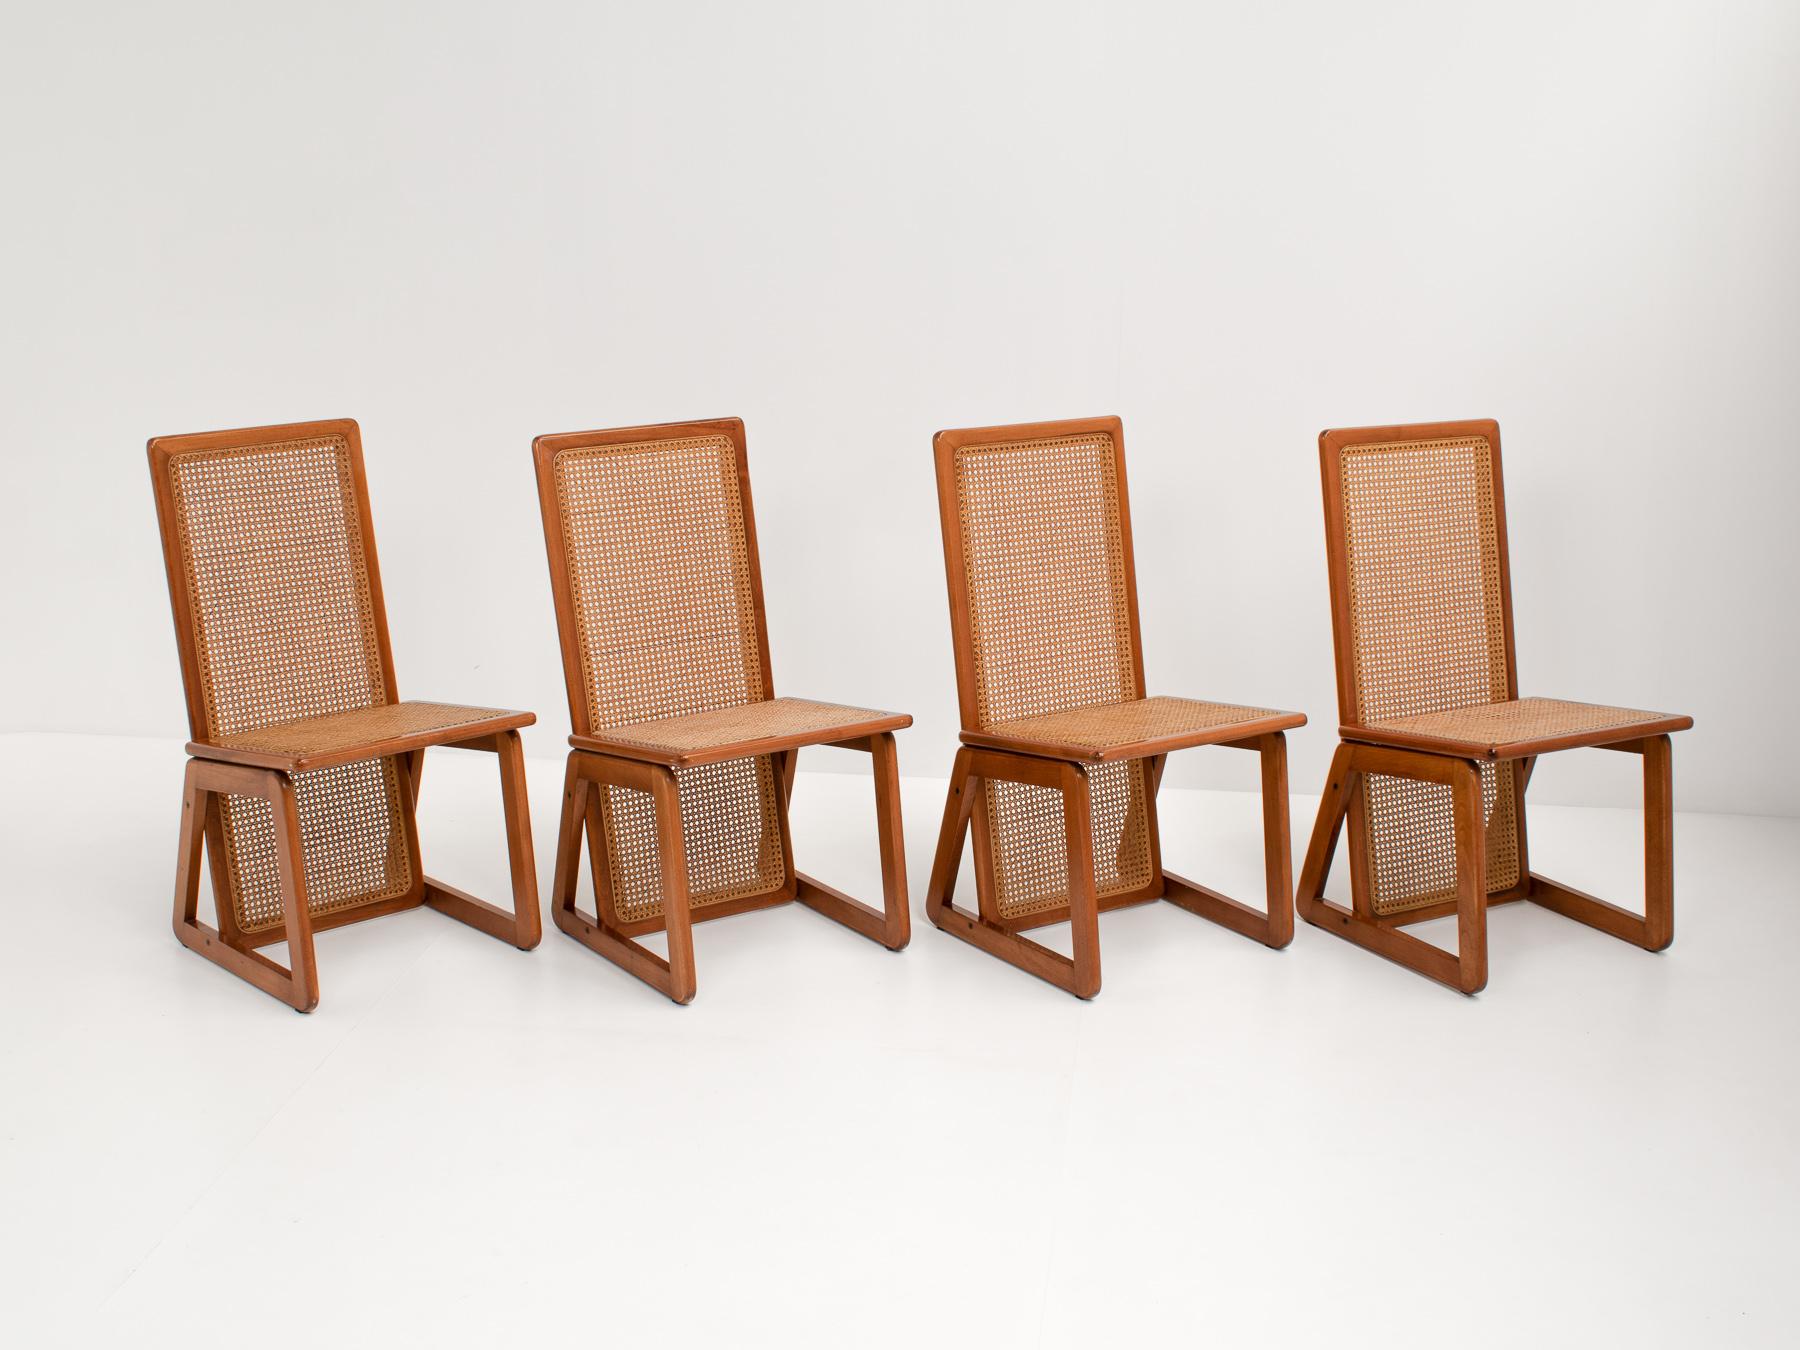 Un bel ensemble de 4 chaises de salle à manger italiennes à dossier haut.

Les chaises sont une combinaison parfaite entre design et confort, grâce à leur dossier haut. Ainsi, les chaises peuvent être réellement utilisées et ne servent pas seulement